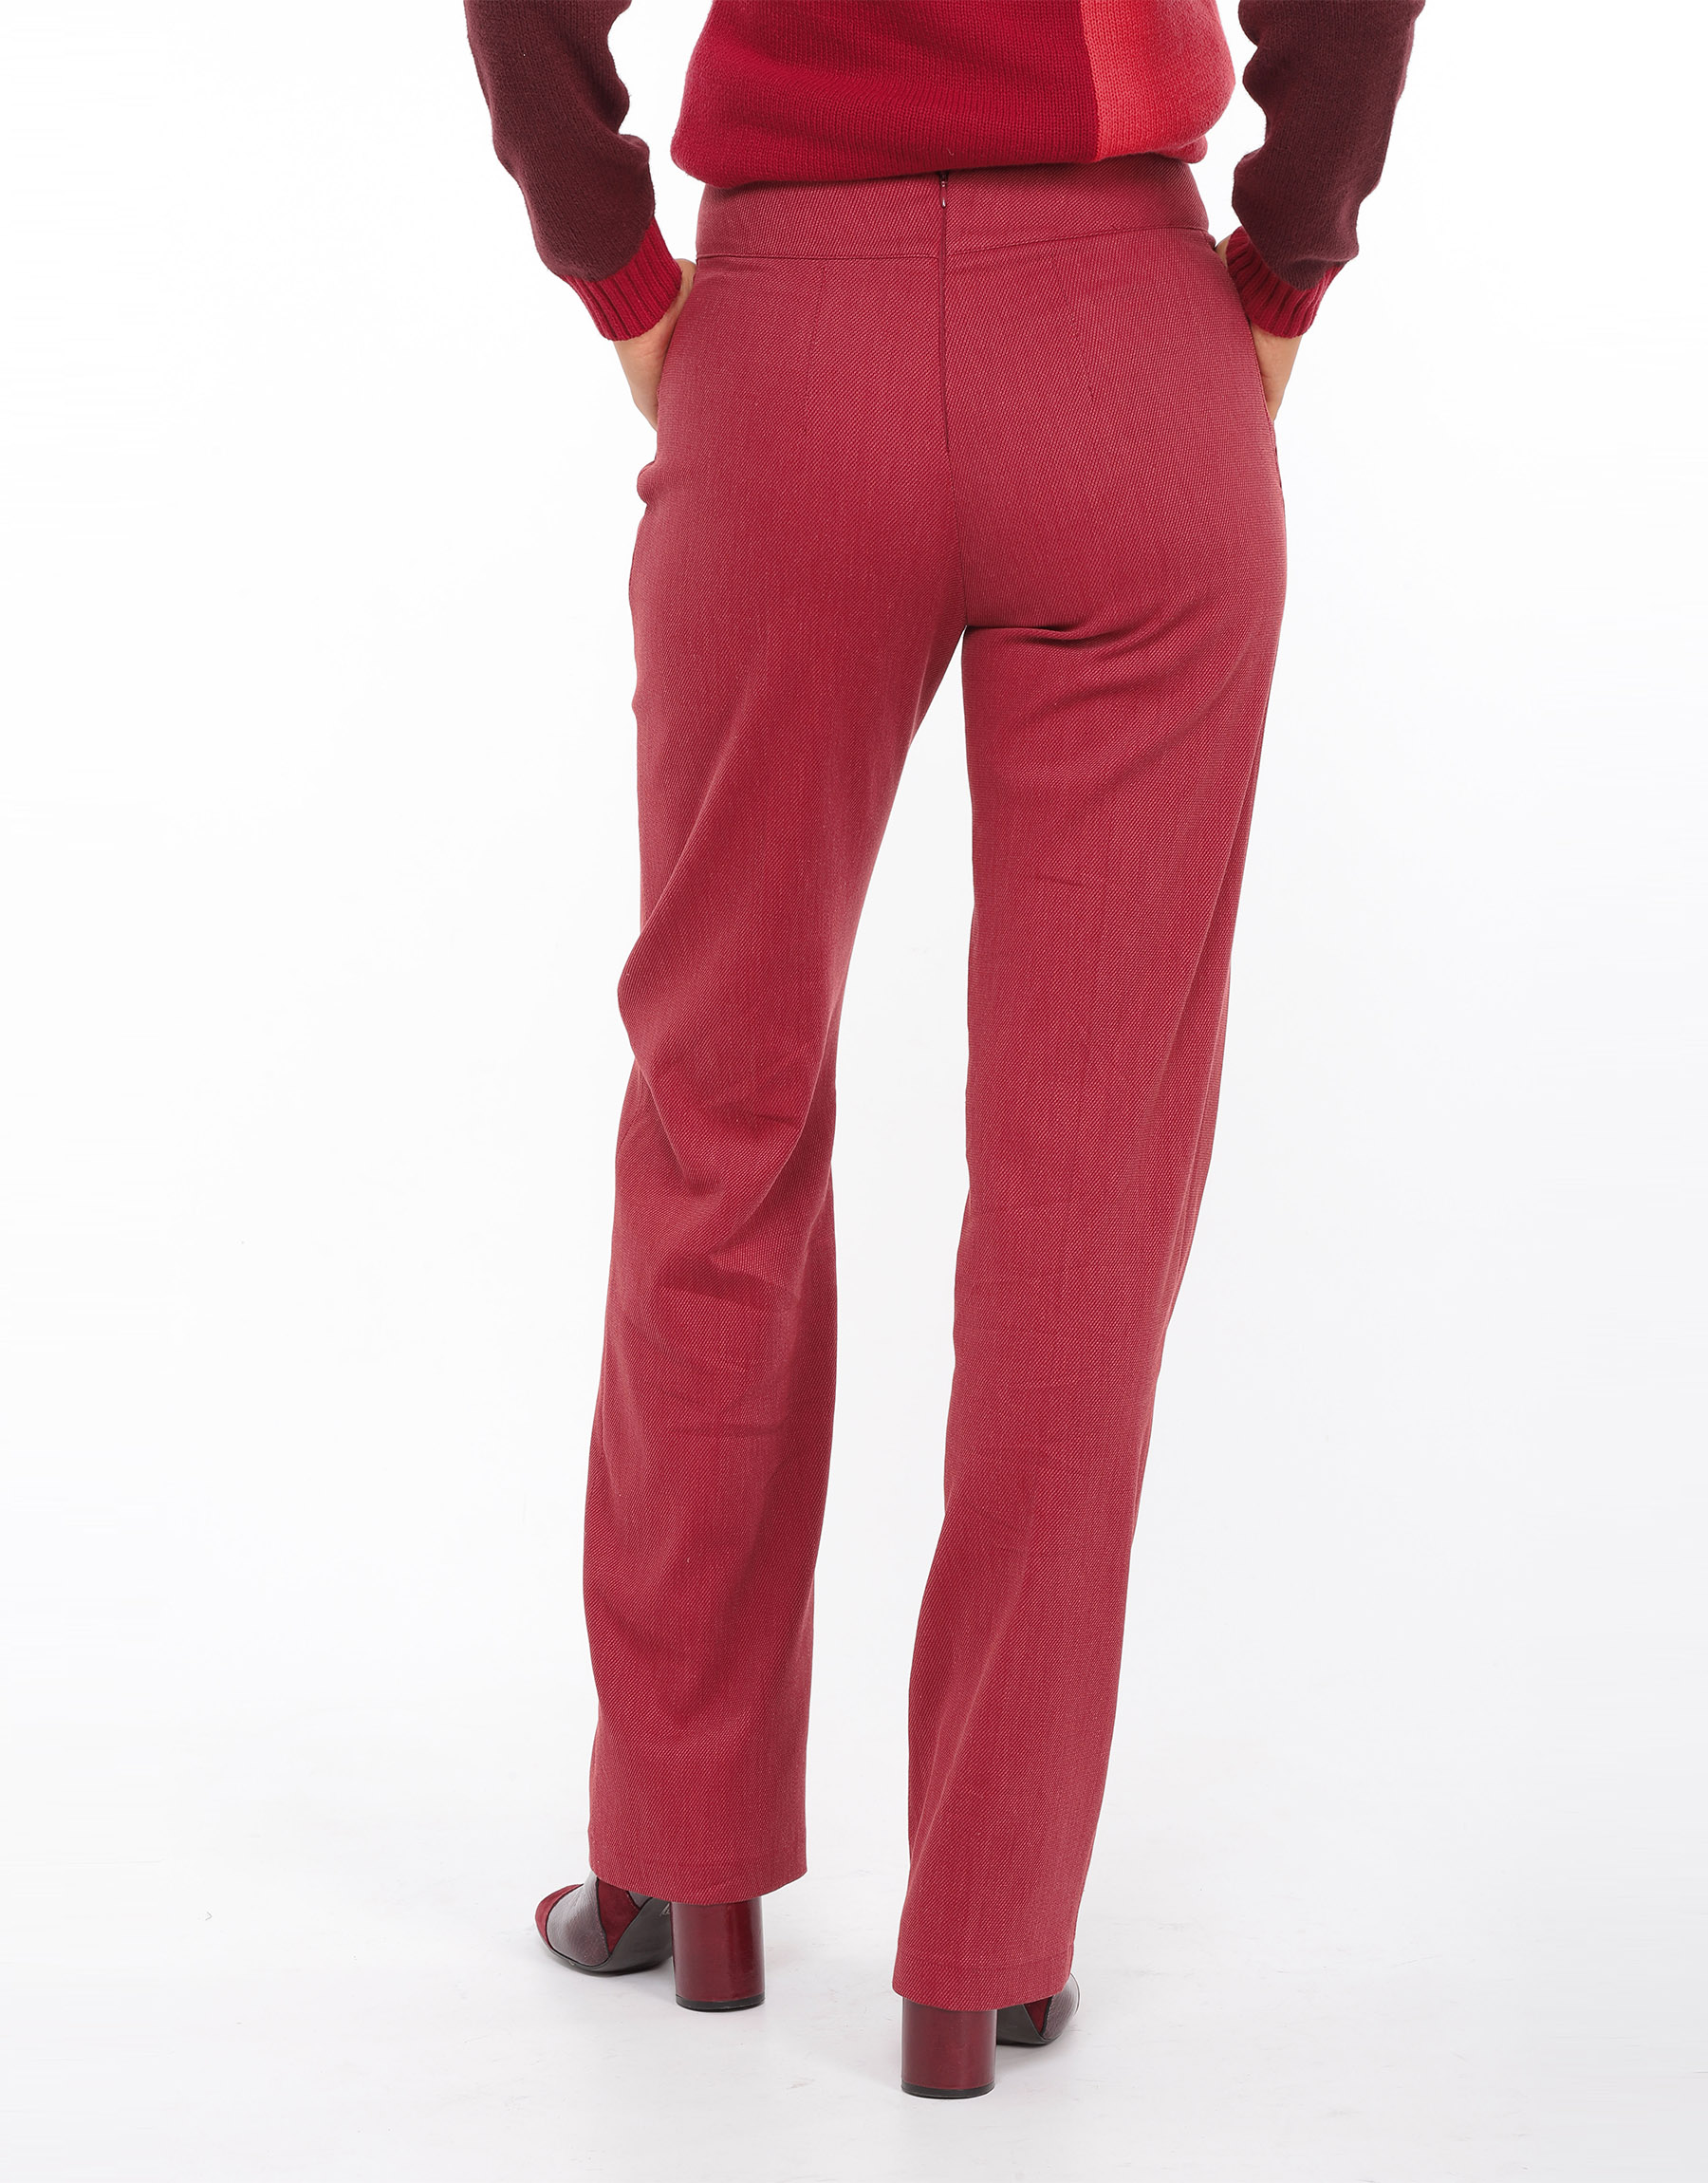 Pantalon droit taille haute en laine irisée noir ou coton et soie rouge